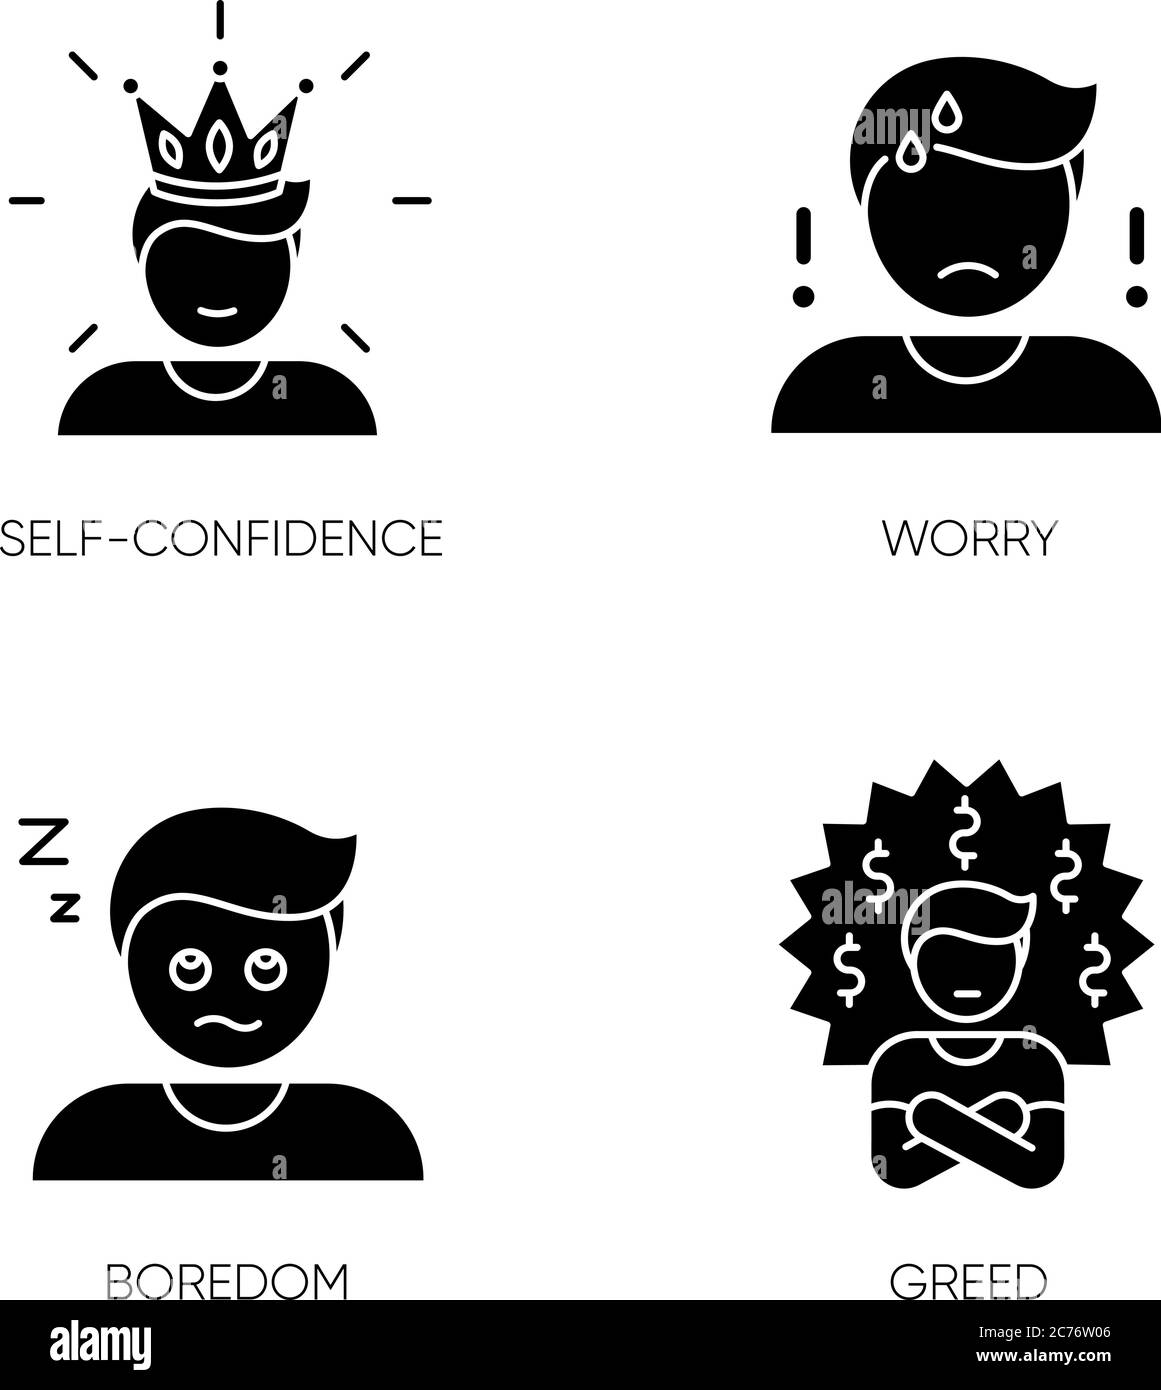 Negative Gefühle und schlechte Eigenschaften schwarze Glyphen-Symbole auf  weißem Raum gesetzt. Menschliche Emotionen, persönliche Gefühle Silhouette  Symbole. Selbstvertrauen, Sorge, b Stock-Vektorgrafik - Alamy